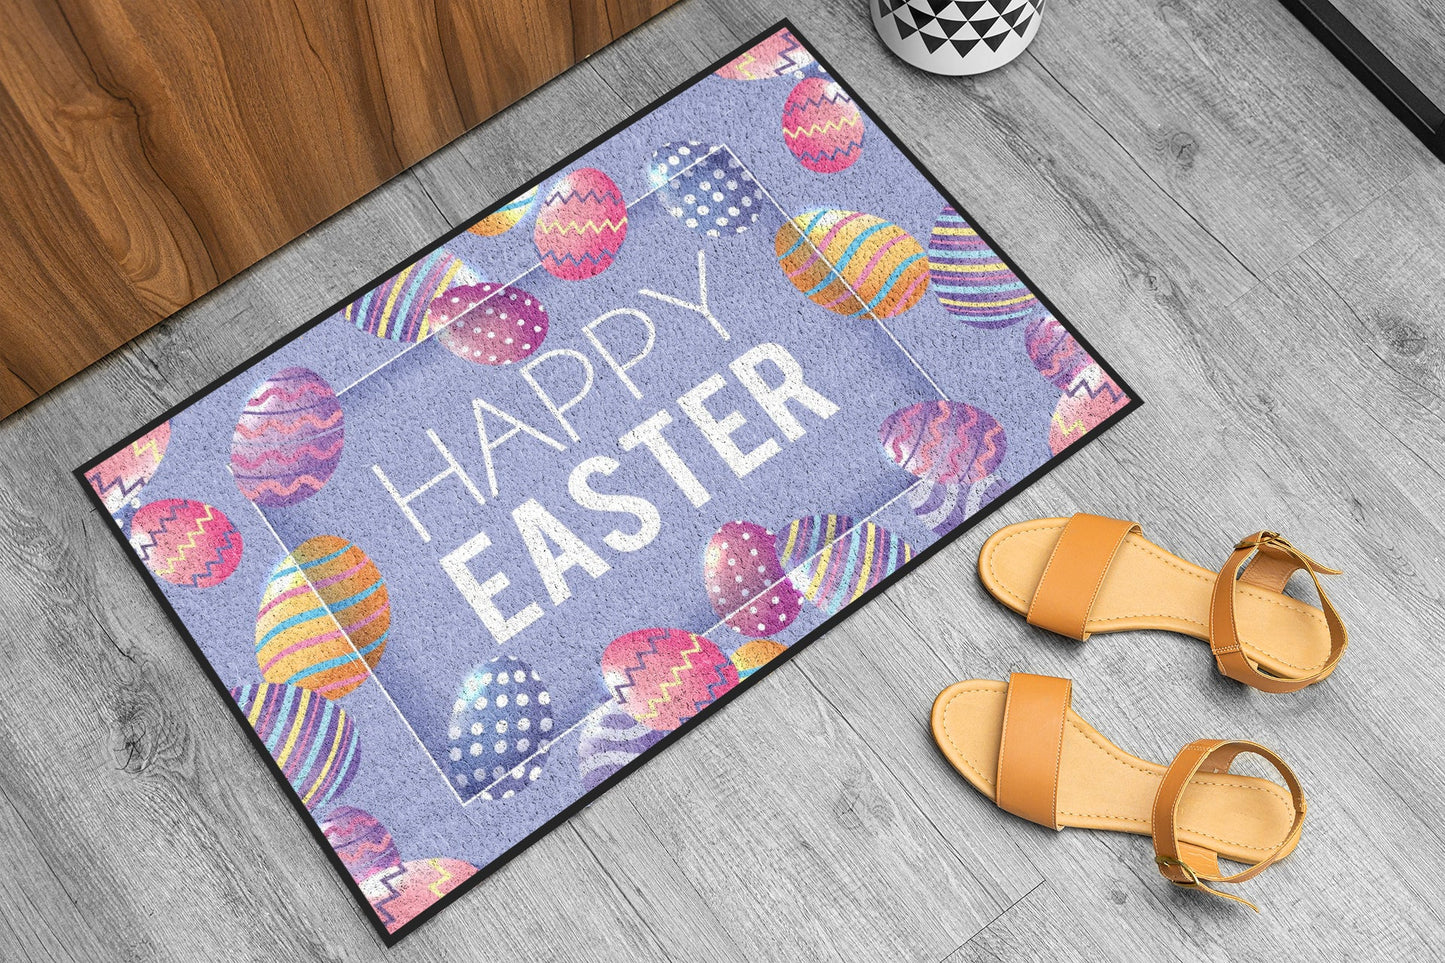 Happy Easter Doormat (20099)